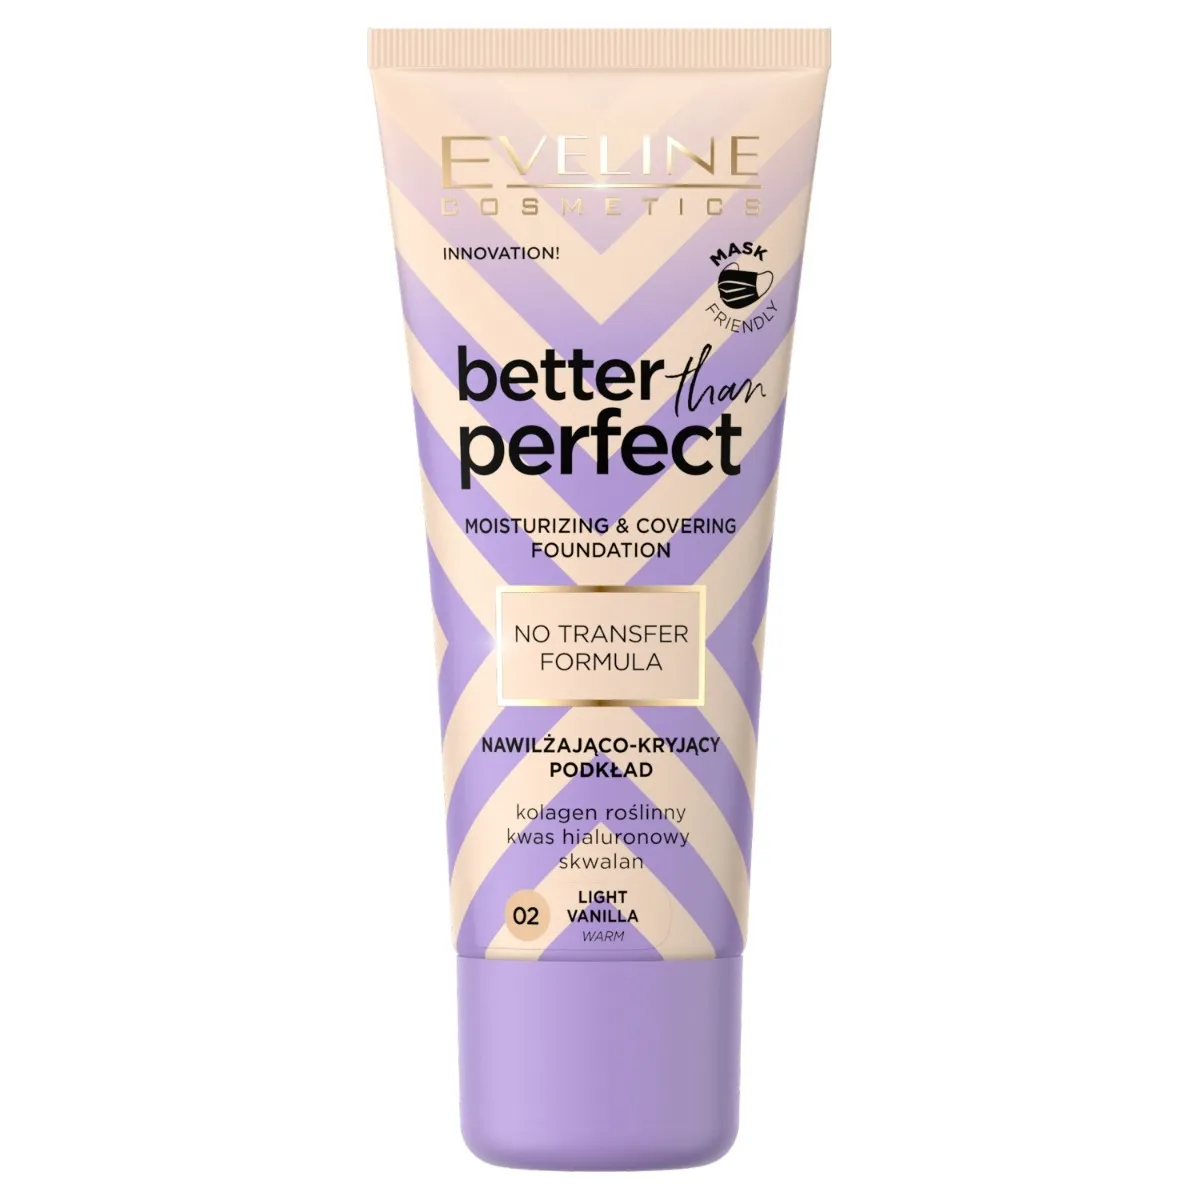 Eveline Cosmetics Better Than Perfect Nawilżająco-kryjący podkład z formułą No Transfer nr 02 Light vanilia, 30 ml